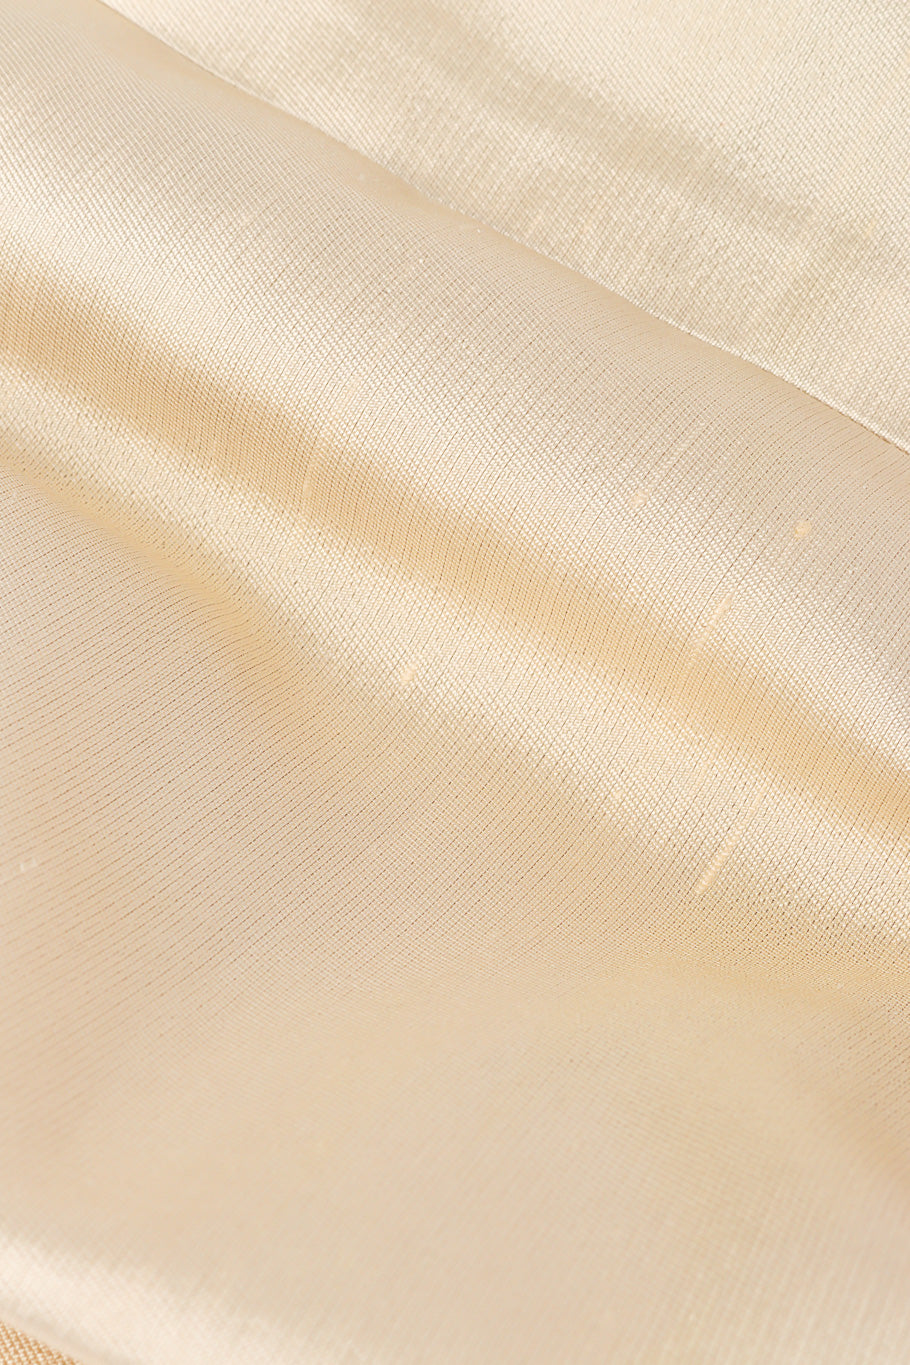 Silk set by Dynasty flat lay fabric close @recessla